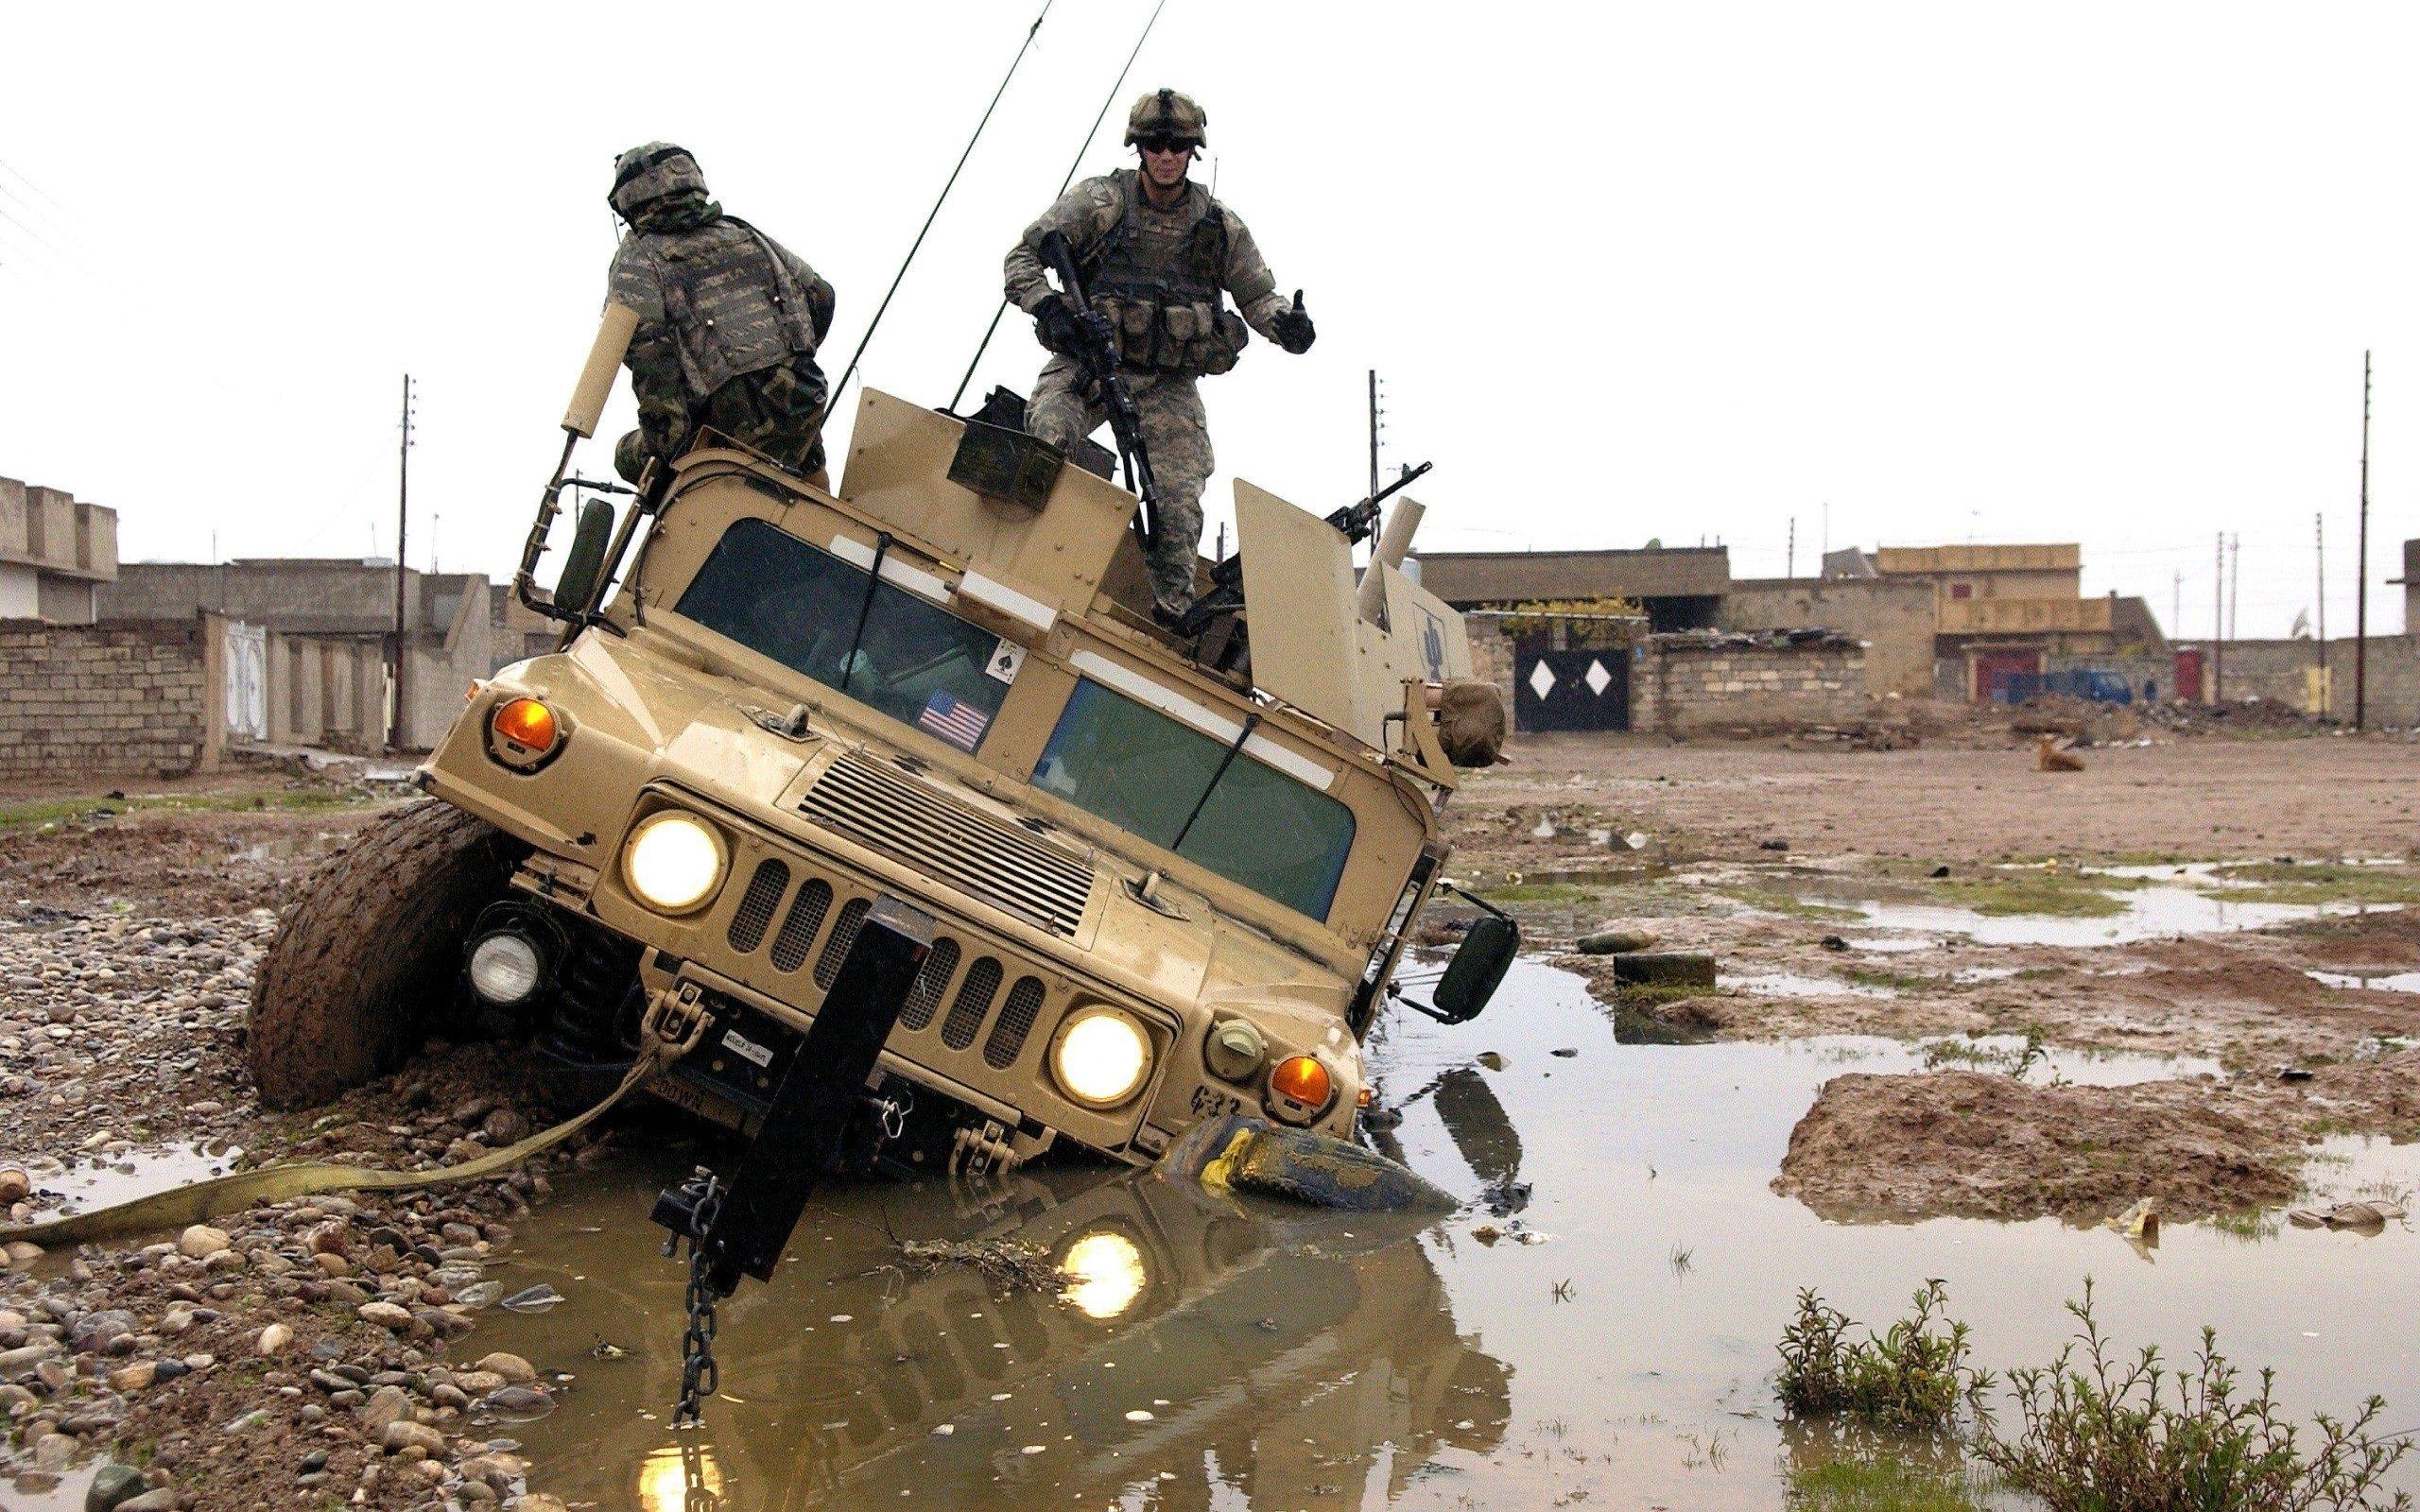 2560x1600 Xe SUV của Quân đội Hoa Kỳ trong Truble trên War Pics.  Hình nền nổi tiếng HD